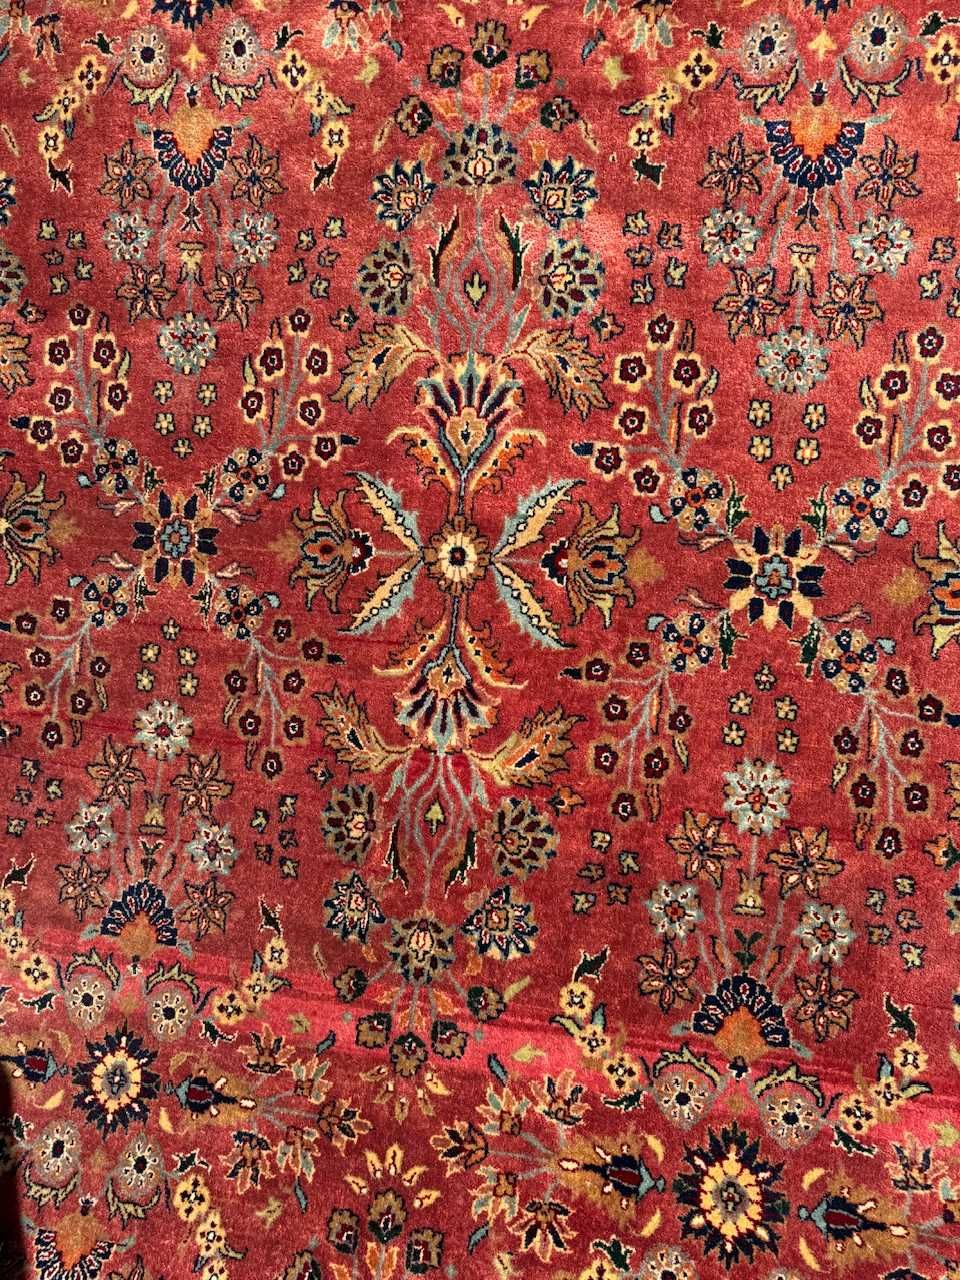 Nowy kaszmirowy dywan perski r. tkany Sarouck 300x200 galeria 18 tyś